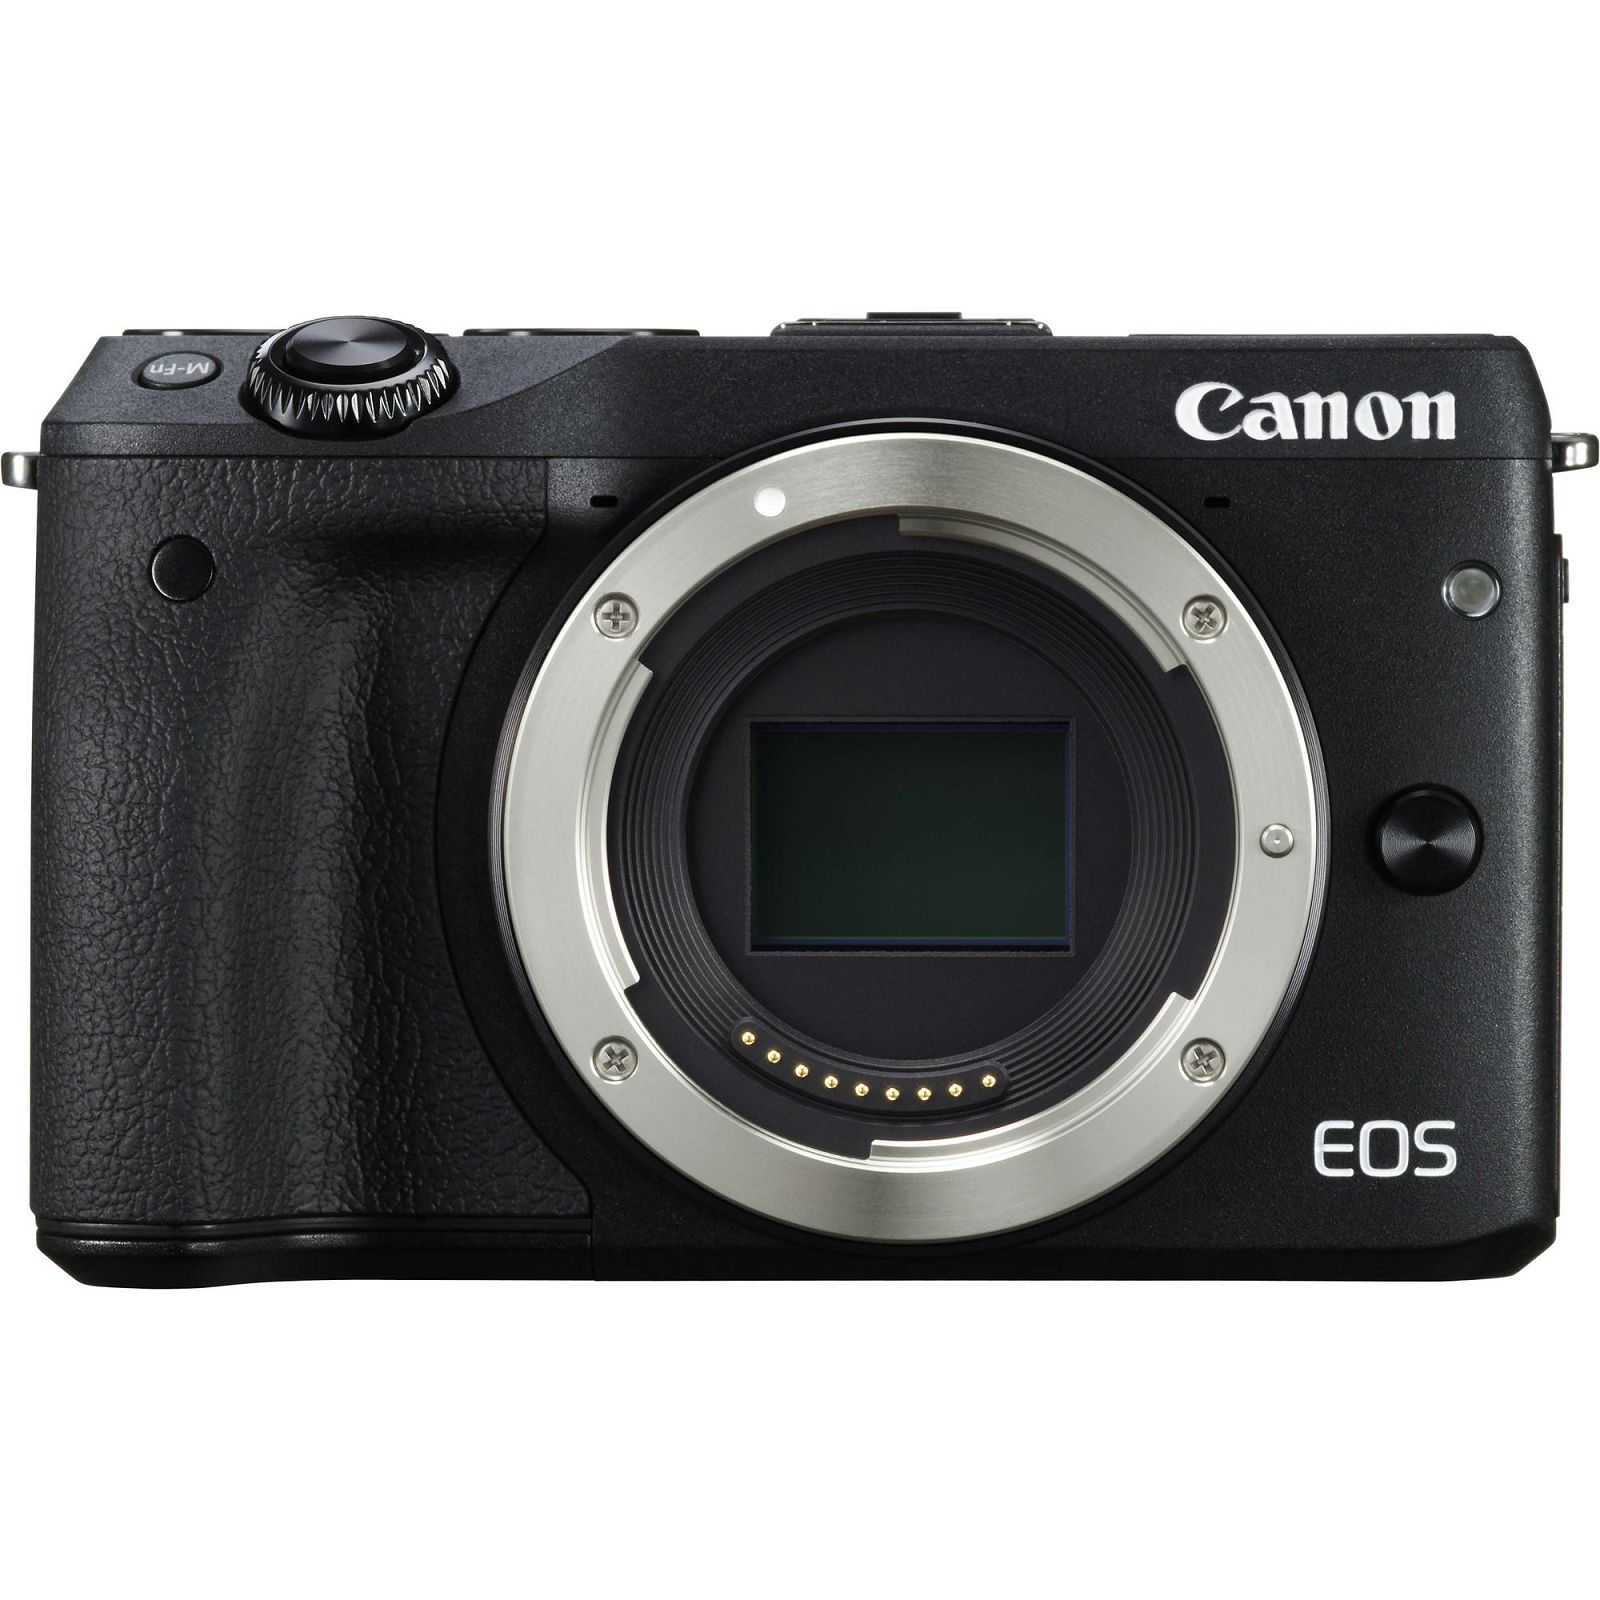 Canon EOS M3 + 18-55 IS STM Black crni Mirrorless Digital Camera Digitalni fotoaparat s objektivom M18-55S EF-M 18-55mm (9694B012AA)